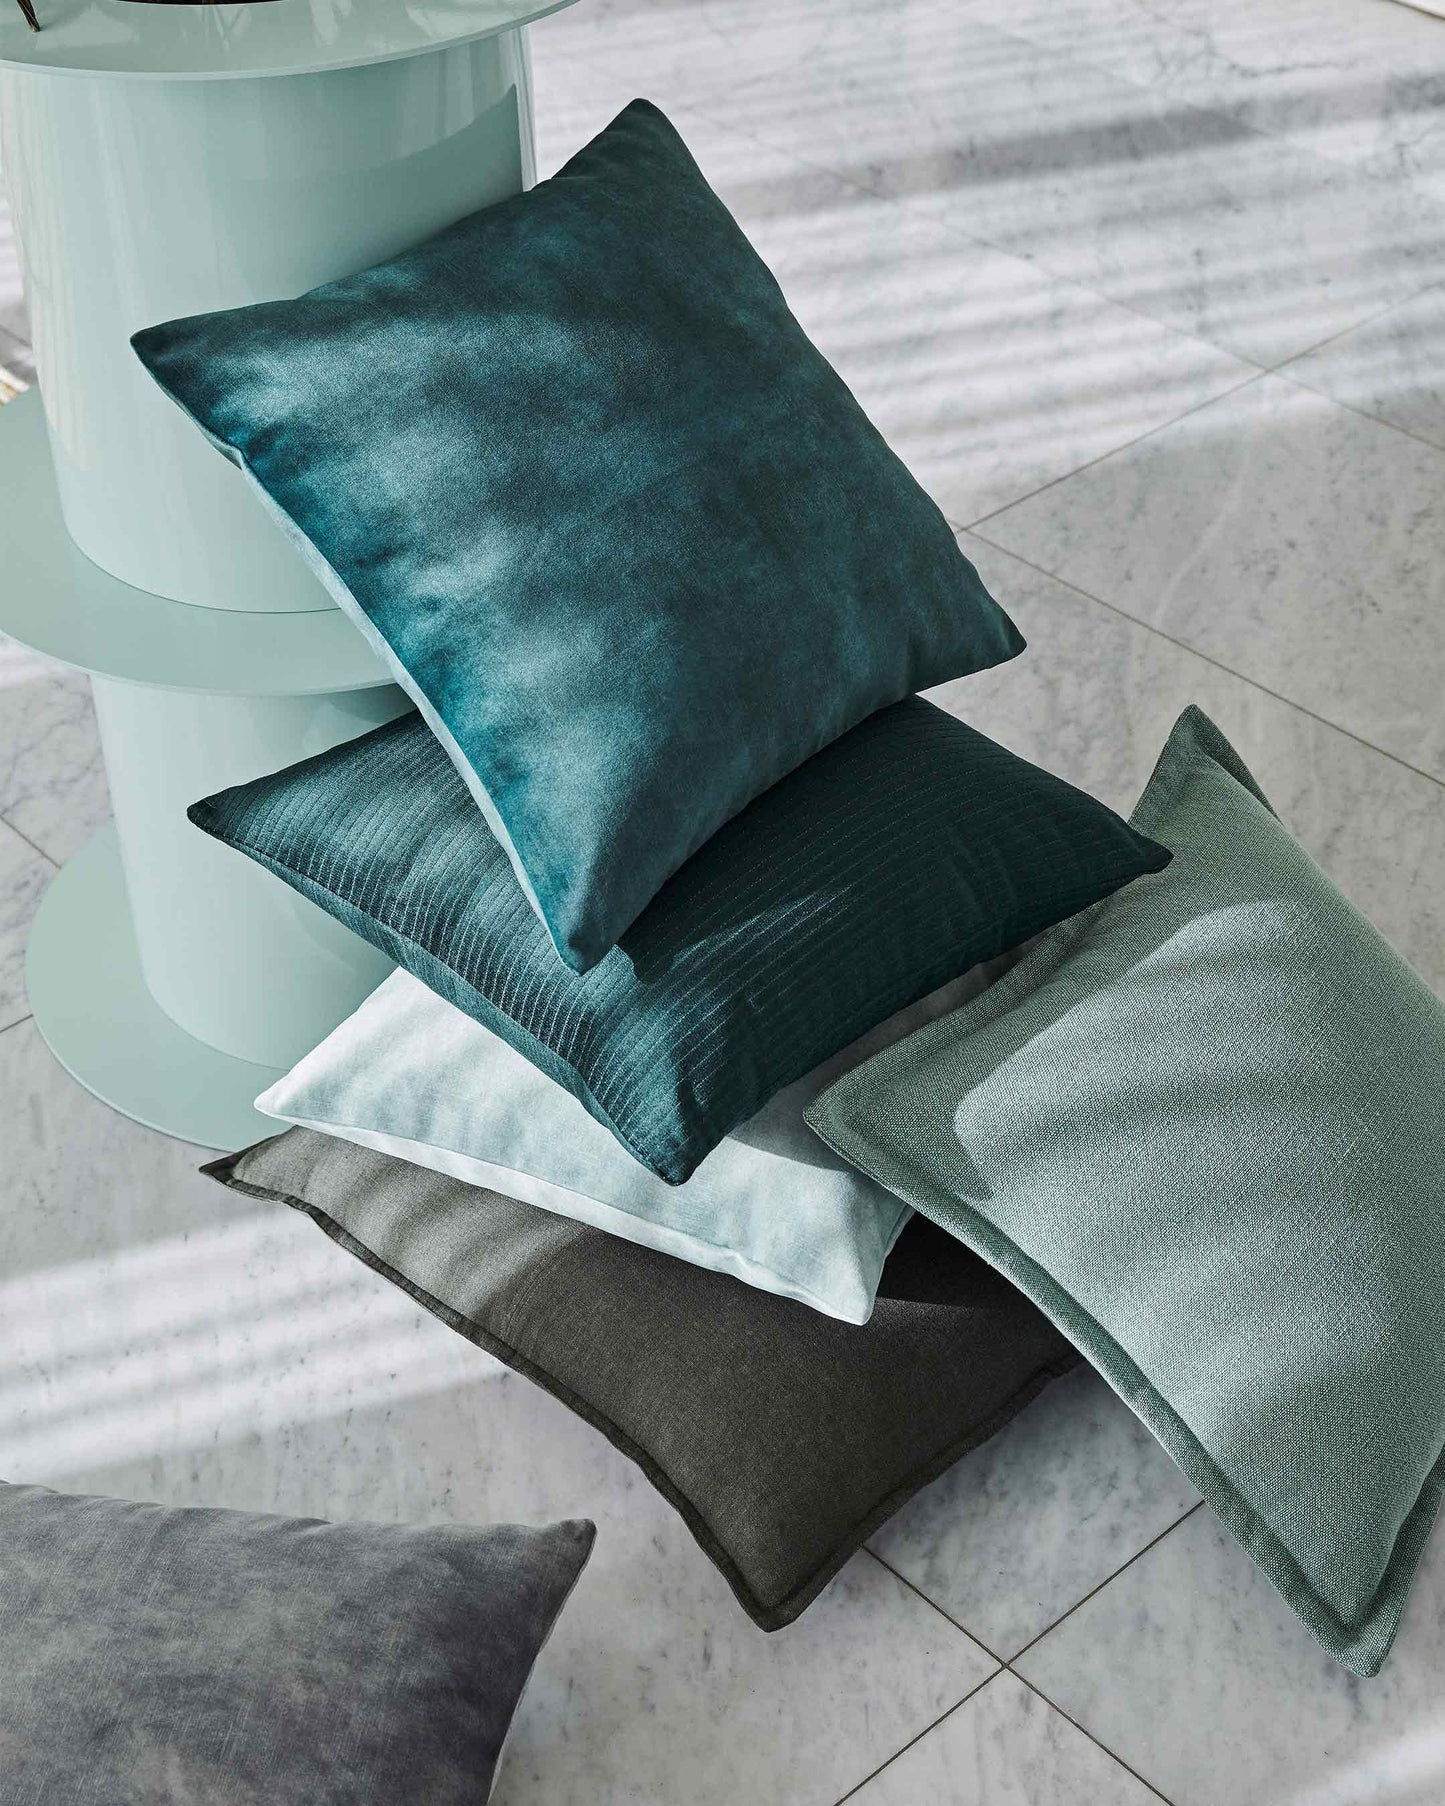 Velvet Cushion | Emerald